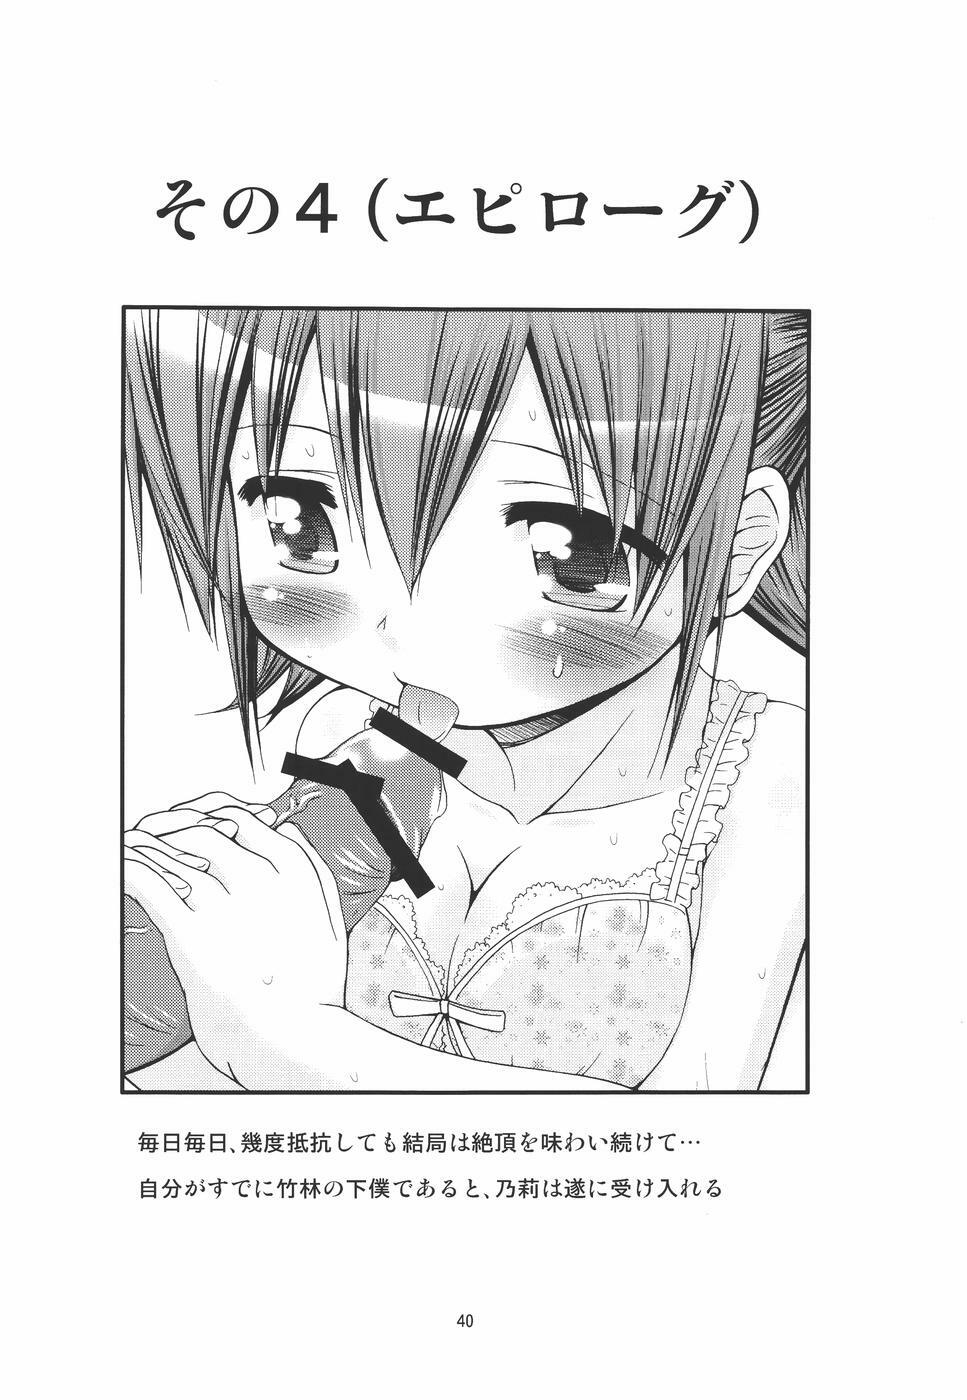 (C78) [FESTA (Yoshitani Ganjitsu)] IT Shoujo N4 (Hidamari Sketch) page 39 full